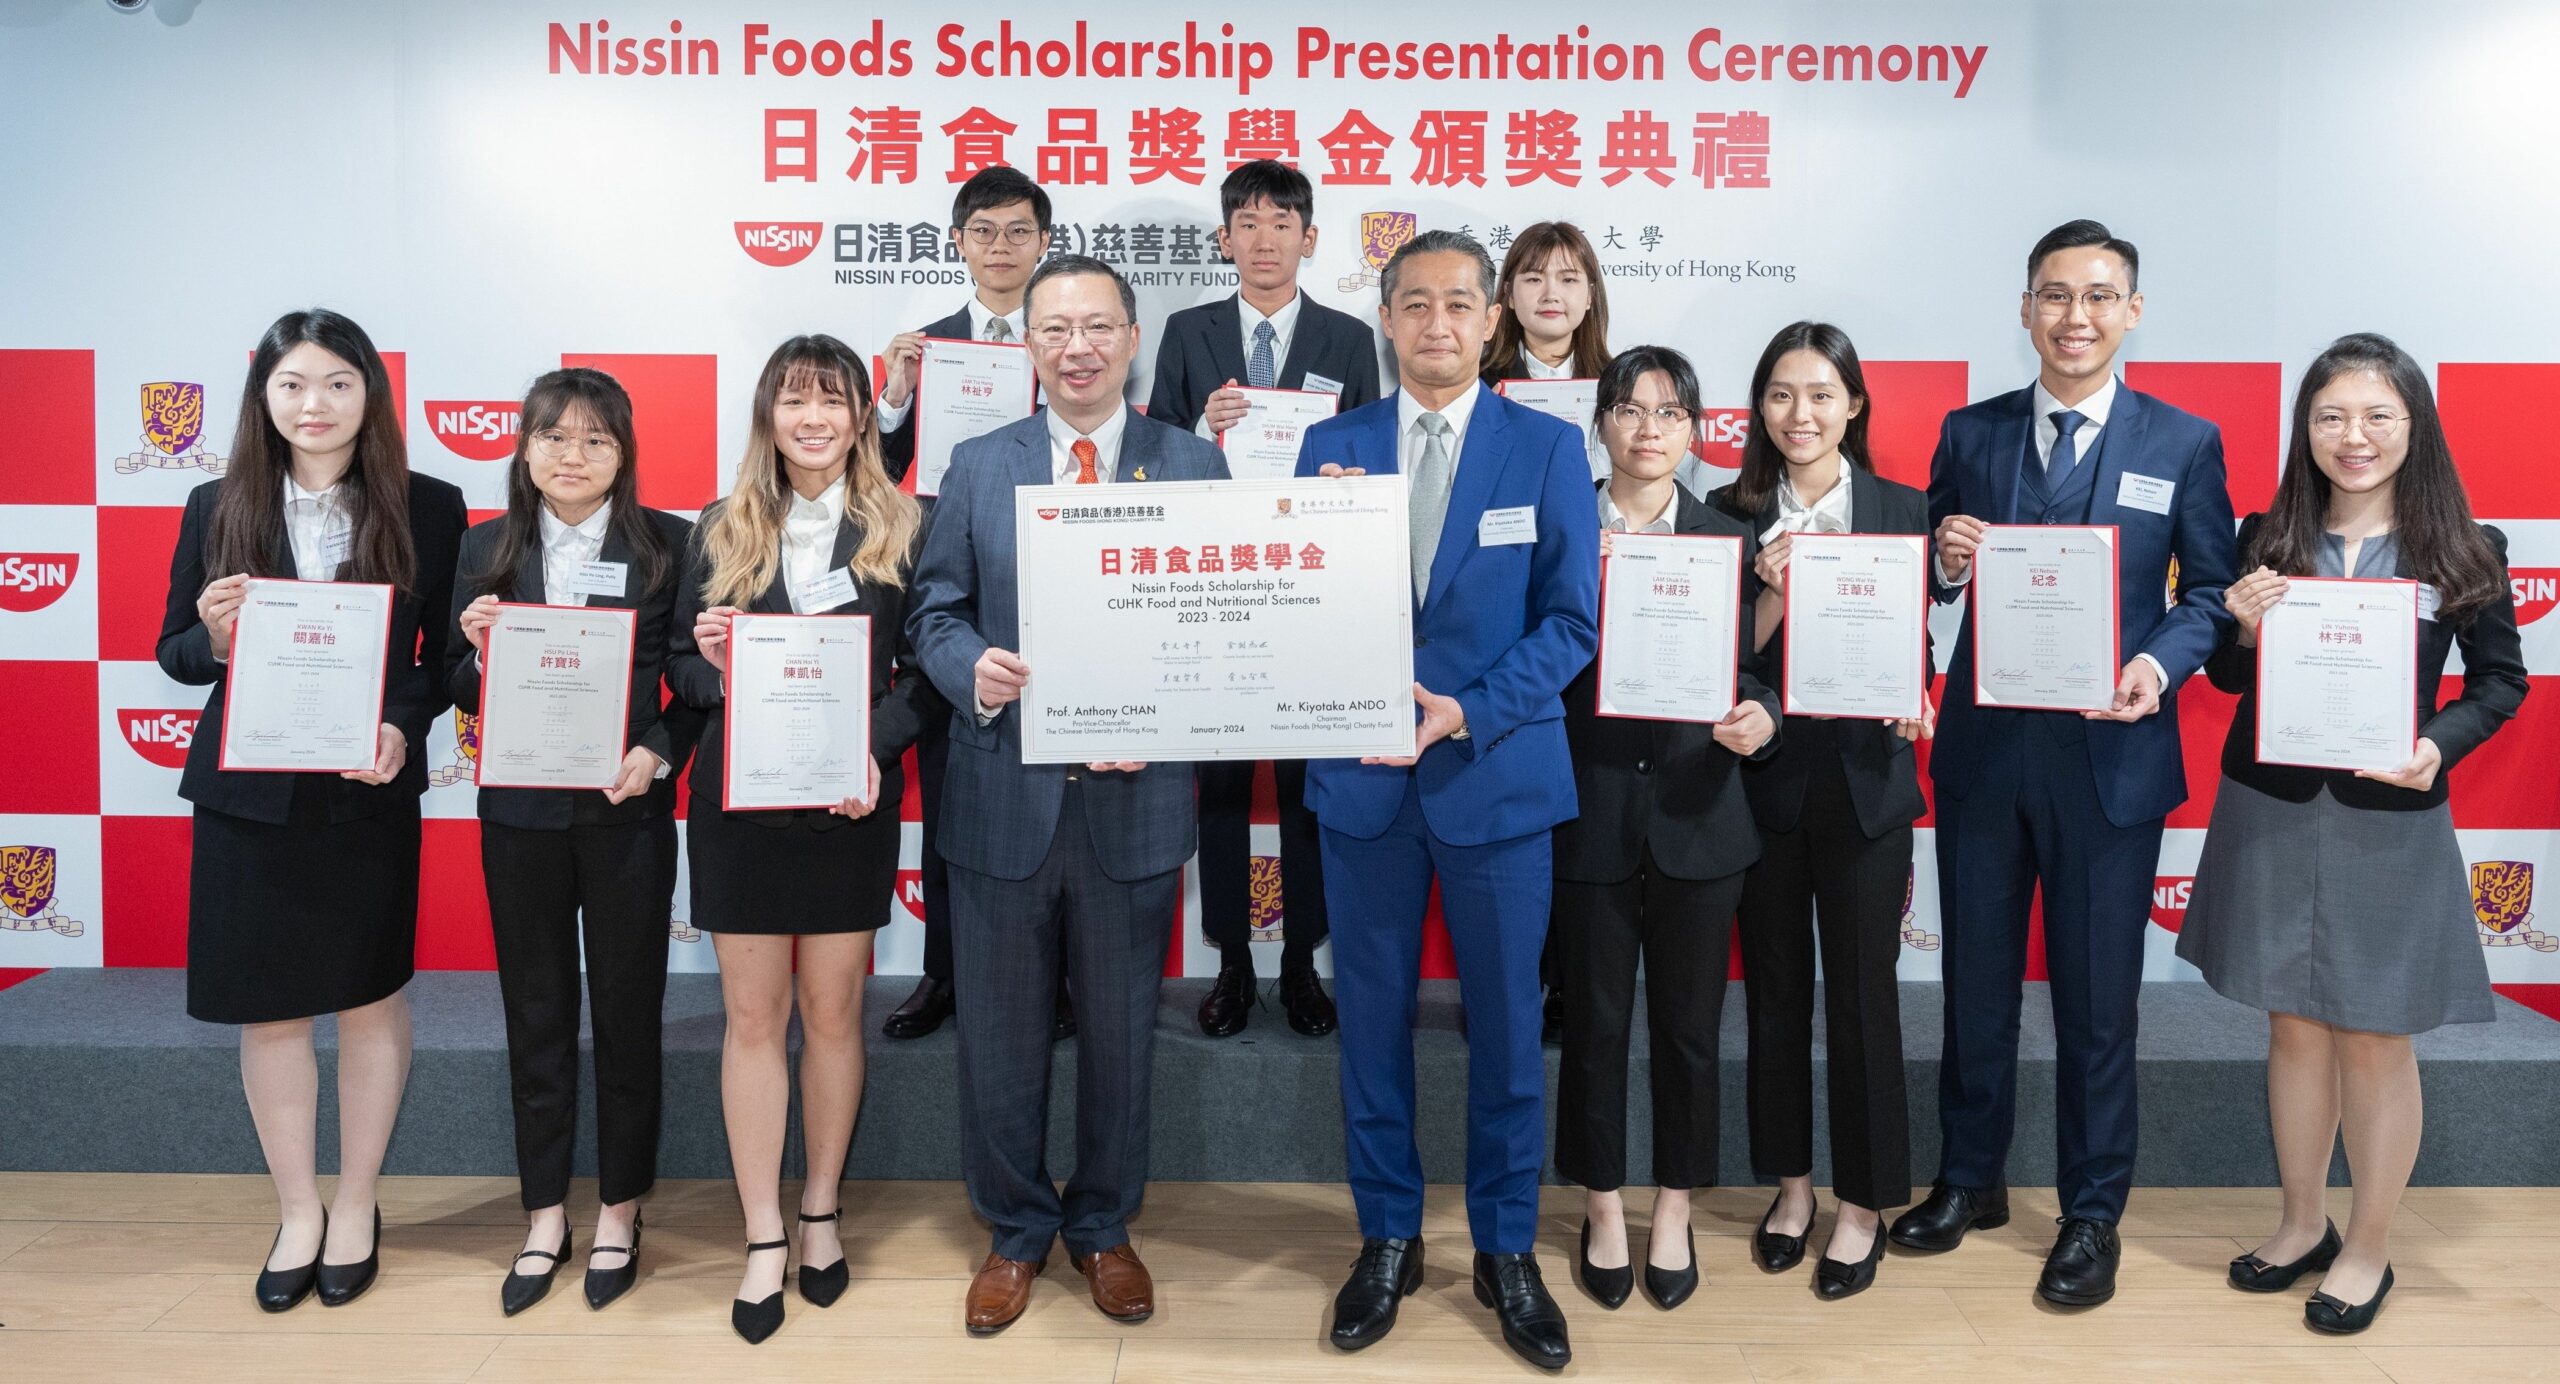 Το φιλανθρωπικό ταμείο Nissin Foods (Χονγκ Κονγκ) συνεχίζει να υποστηρίζει ταλέντα στις επιστήμες των τροφίμων και της διατροφής